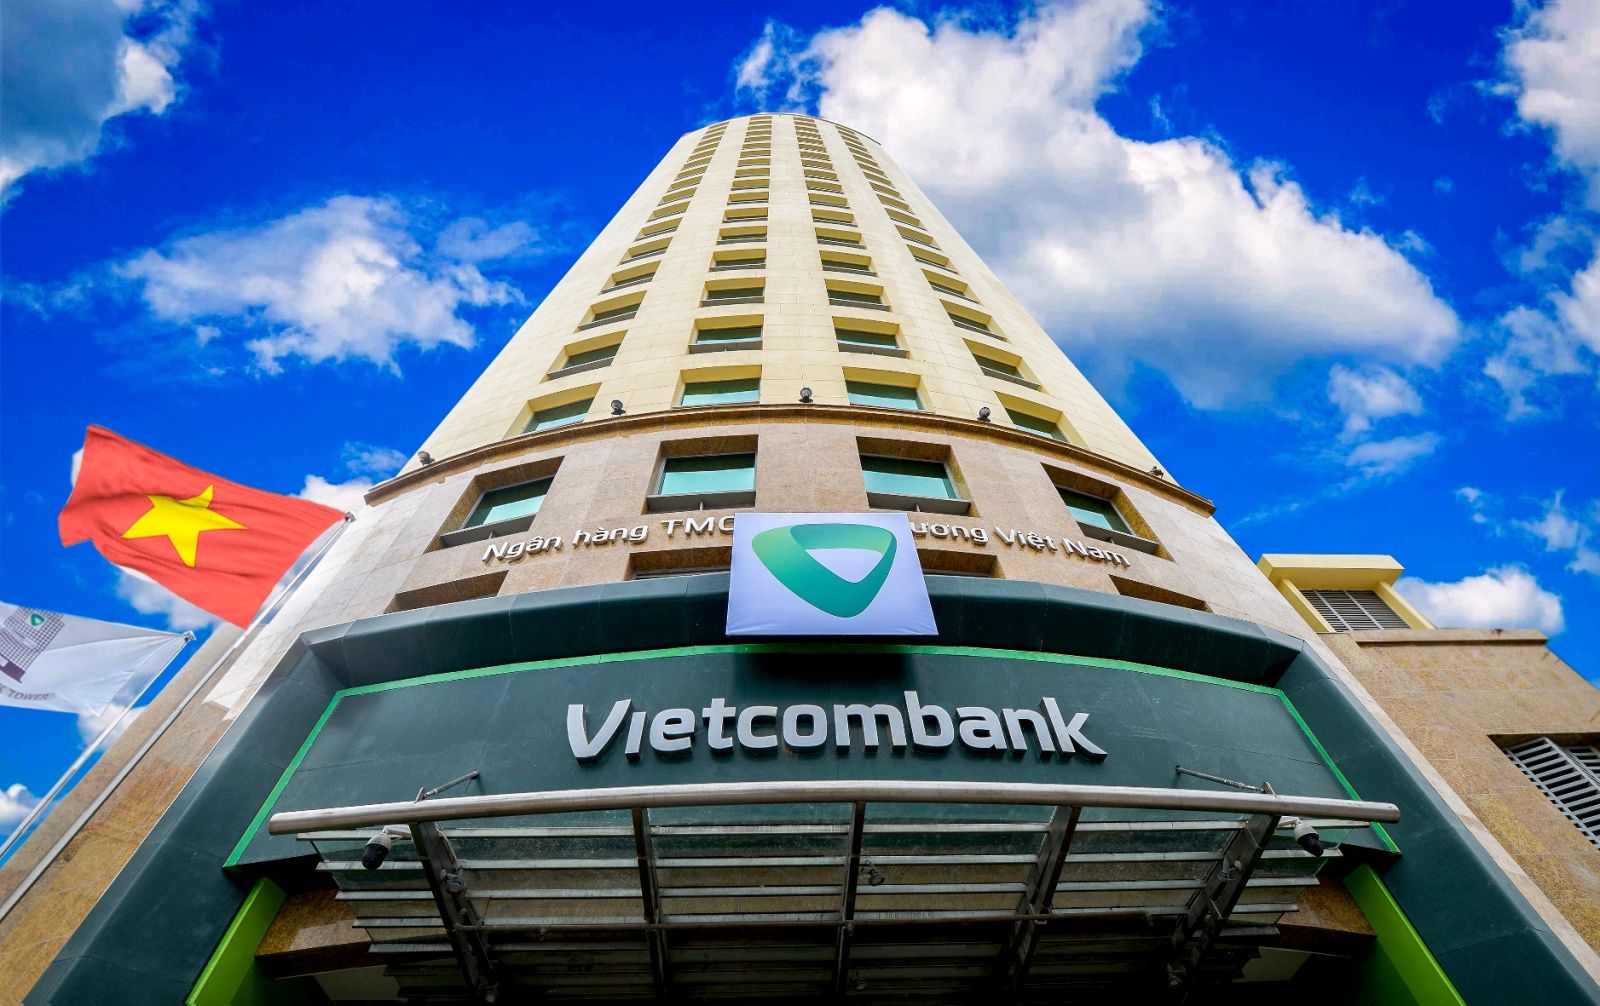 Tính đến thời điểm hiện tại, quy mô vốn hóa của Vietcombank lên tới 16,5 tỷ USD, xấp xỉ 5% GDP, đứng thứ 100 trong số các ngân hàng niêm yết lớn nhất trên toàn cầu về quy mô vốn hóa, theo xếp hạng của Reuters.